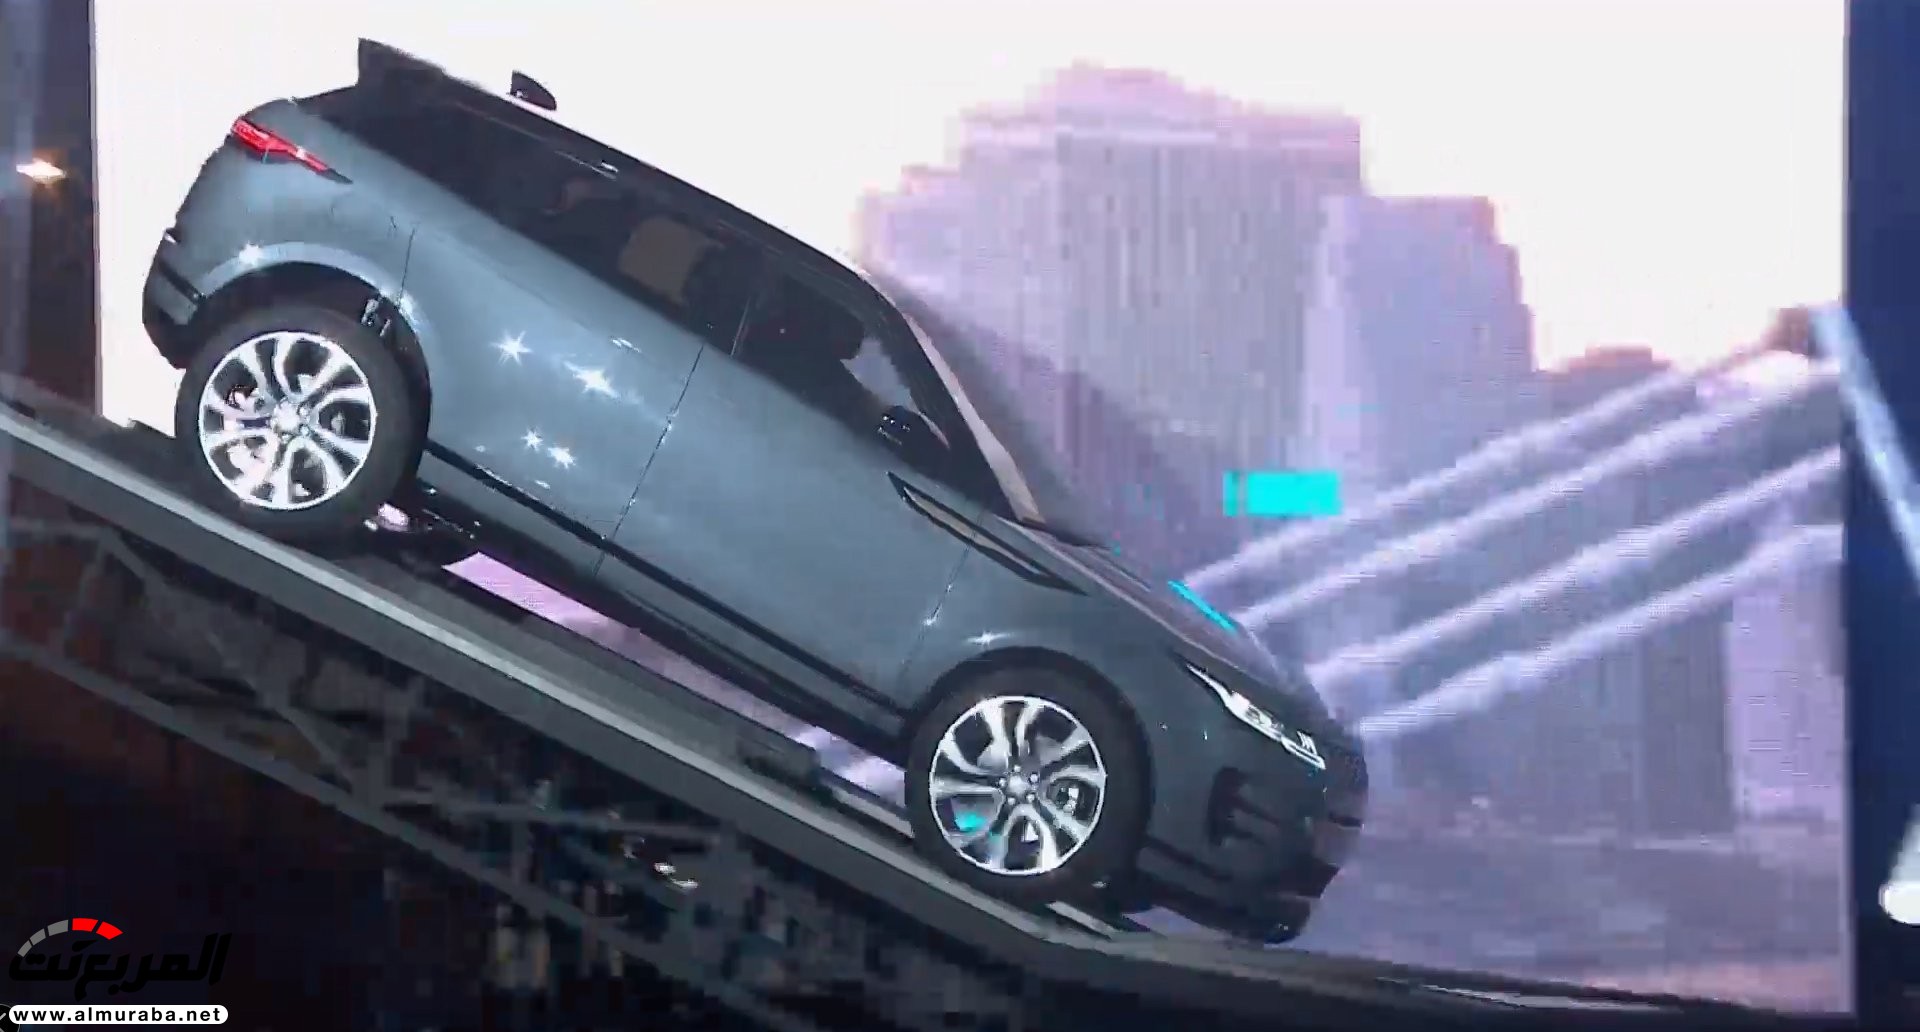 اهم 7 معلومات عن رنج روفر ايفوك 2020 الجديدة كلياً Range Rover Evoque 6